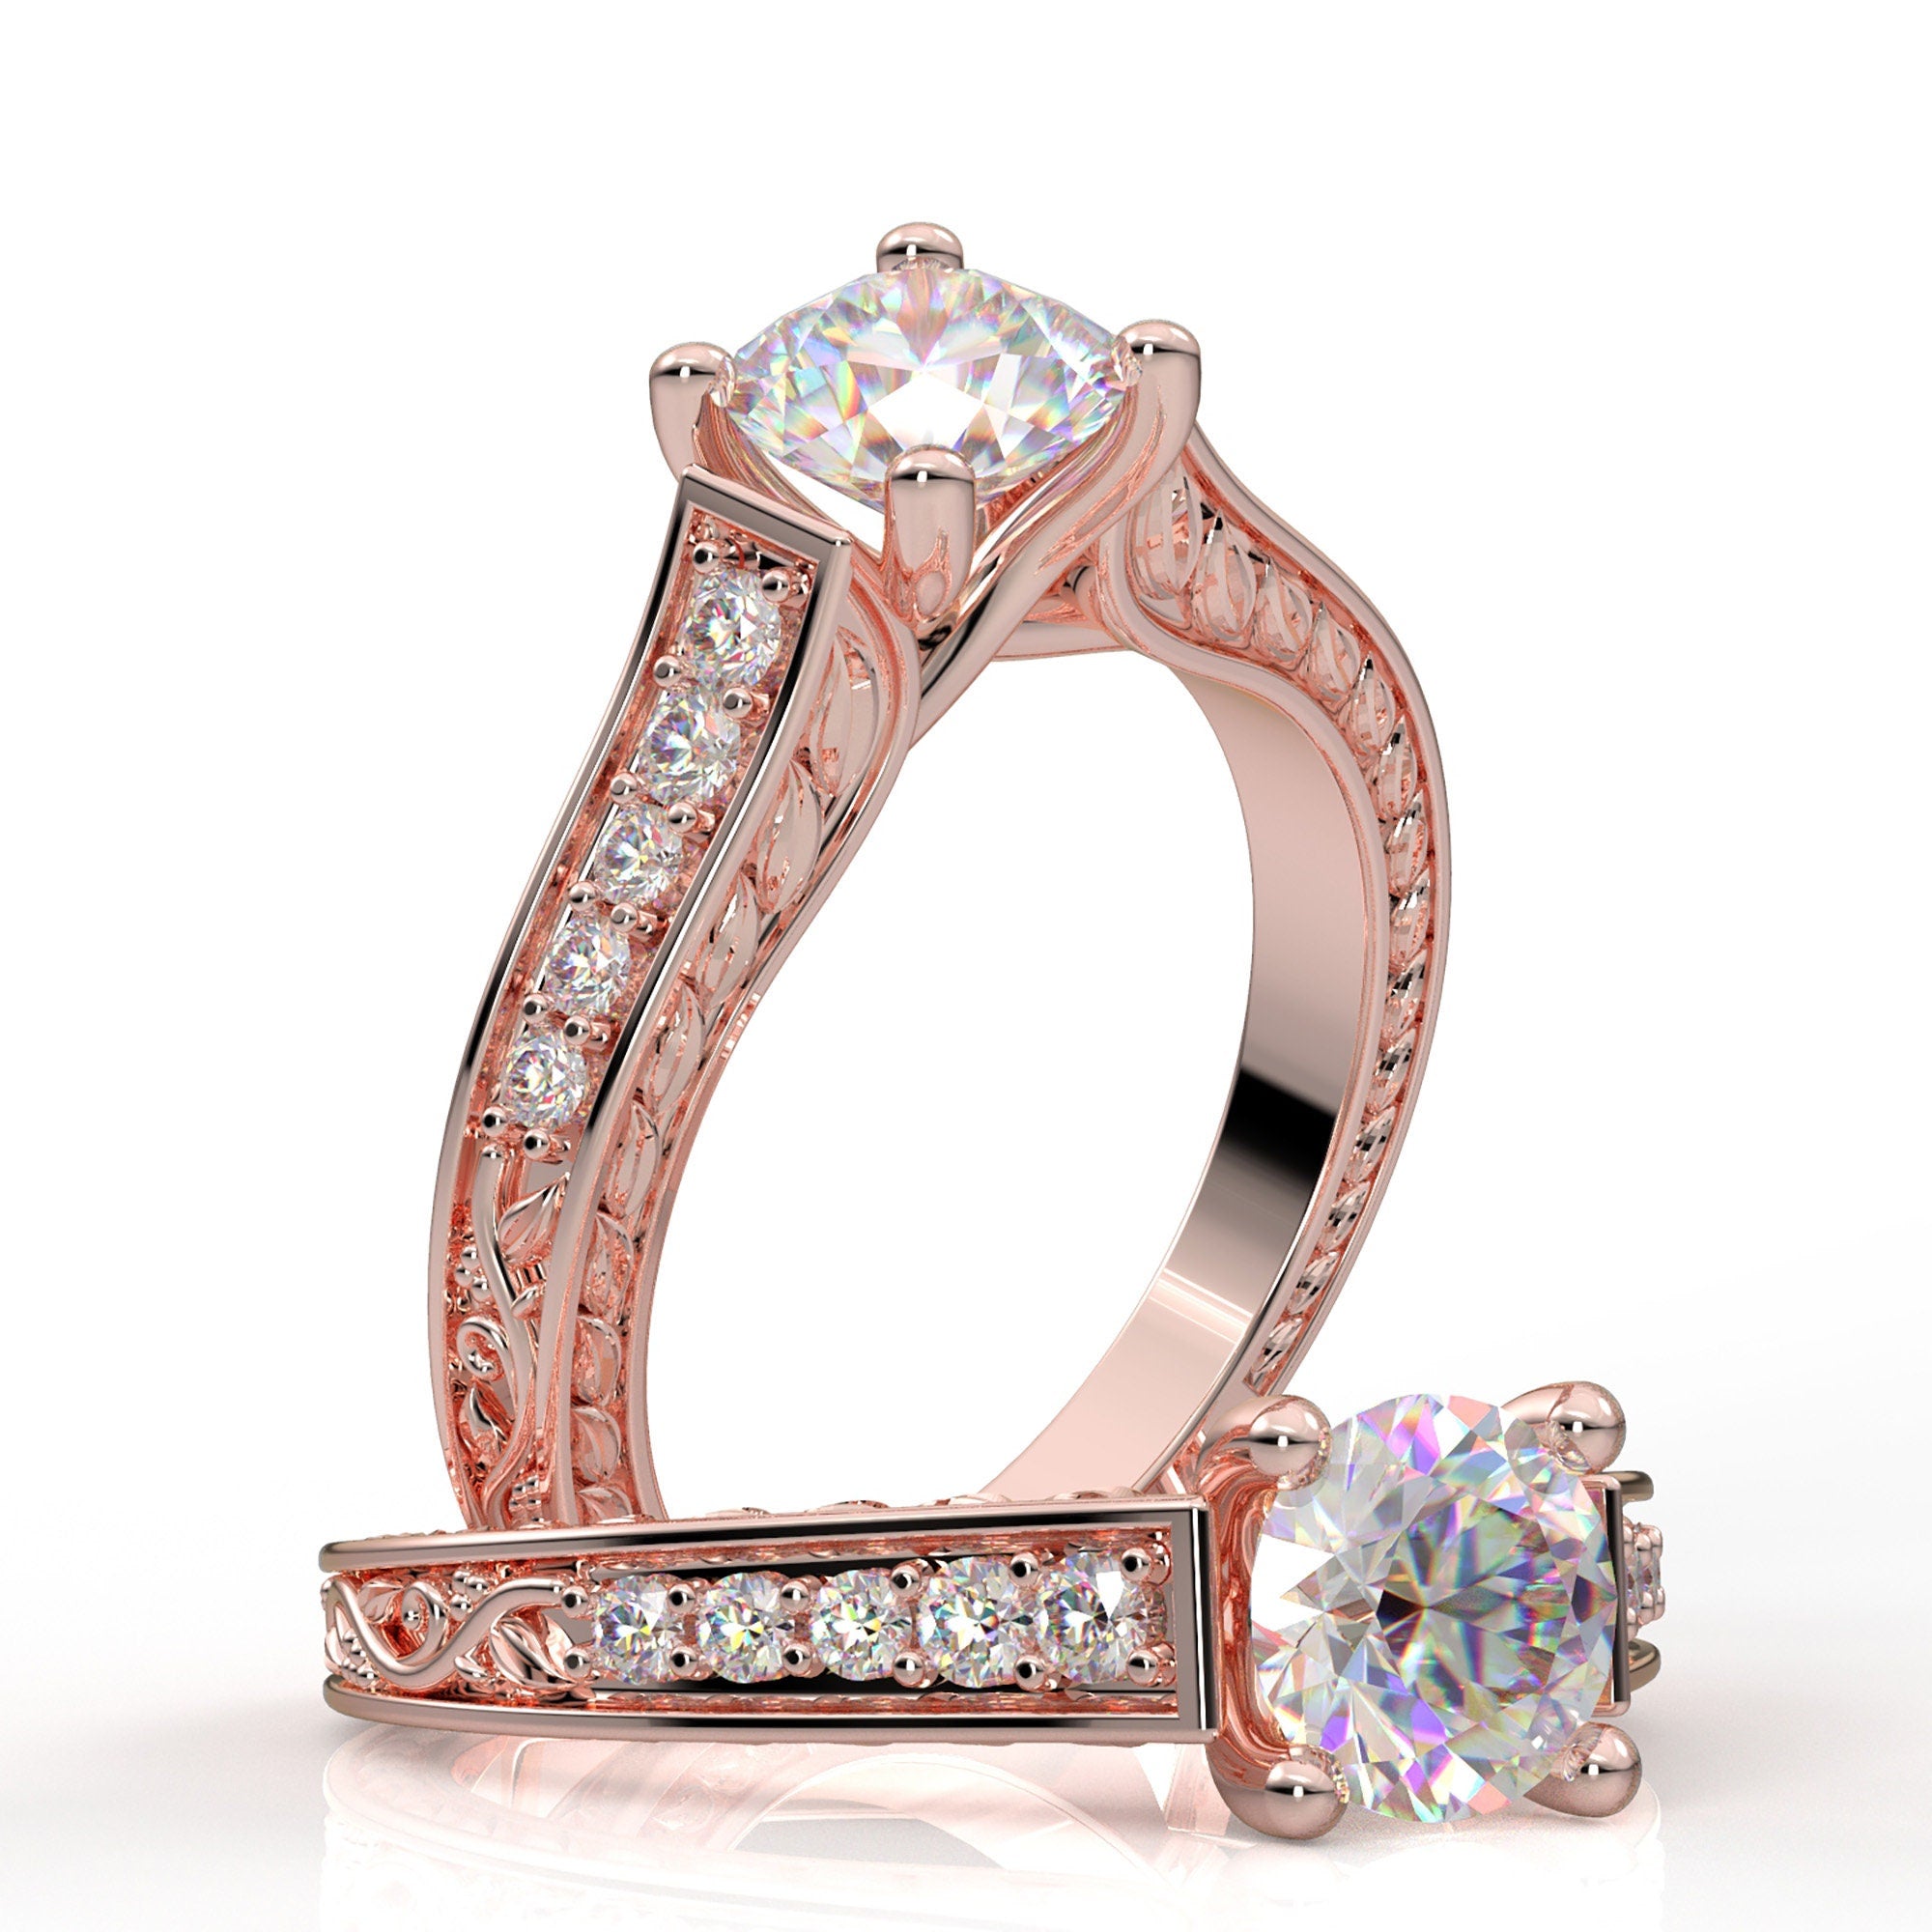 14k Vintage Engagement Ring White Gold Ring Milgrain Filigree Ring Flo